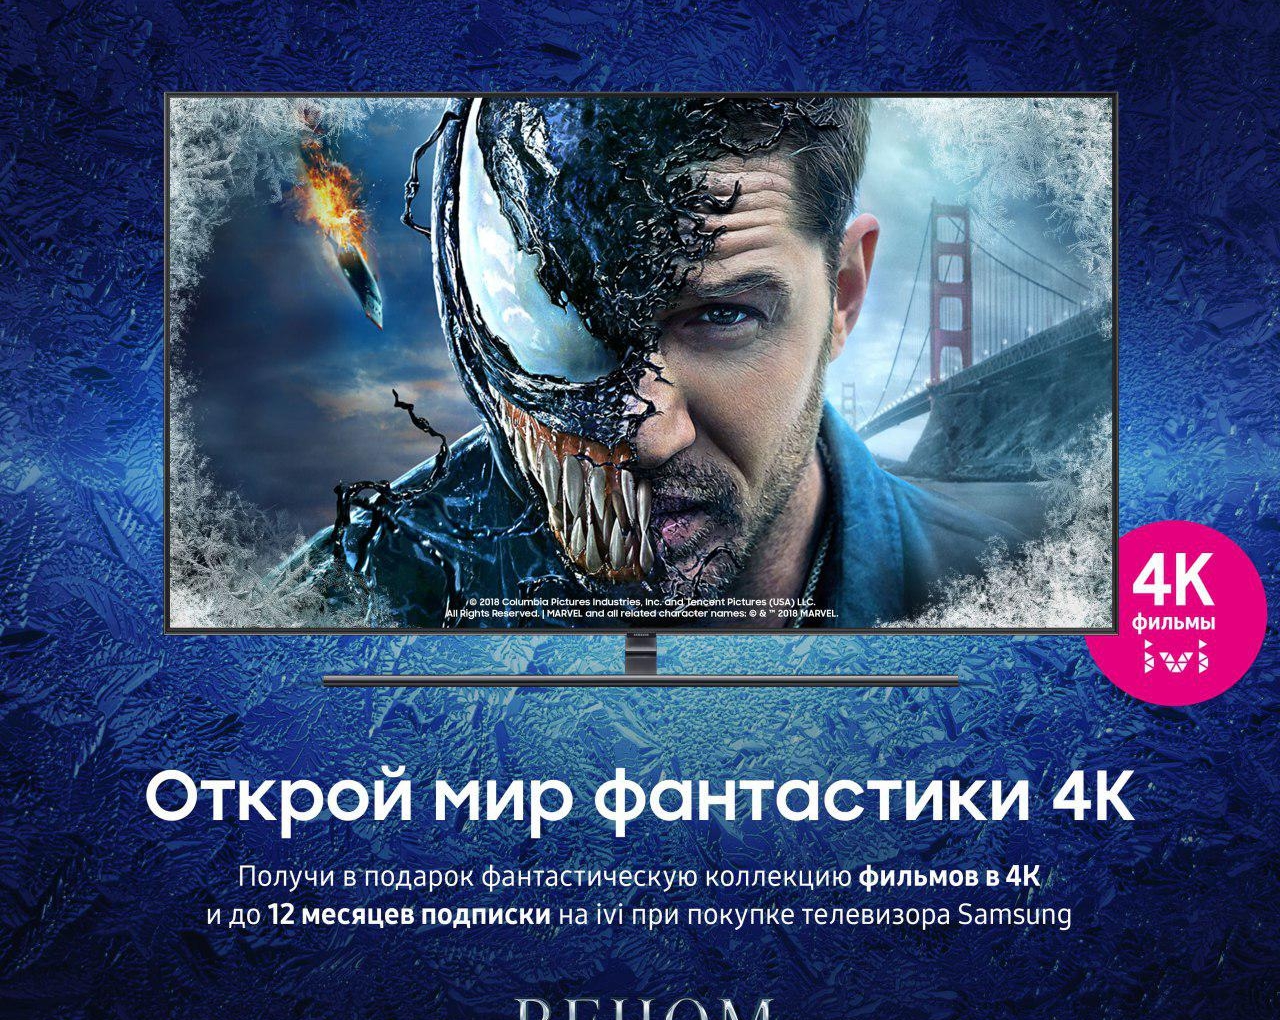 ivi и Samsung дарят крупнейшую коллекцию фильмов в 4K покупателям телевизоров Smart TV